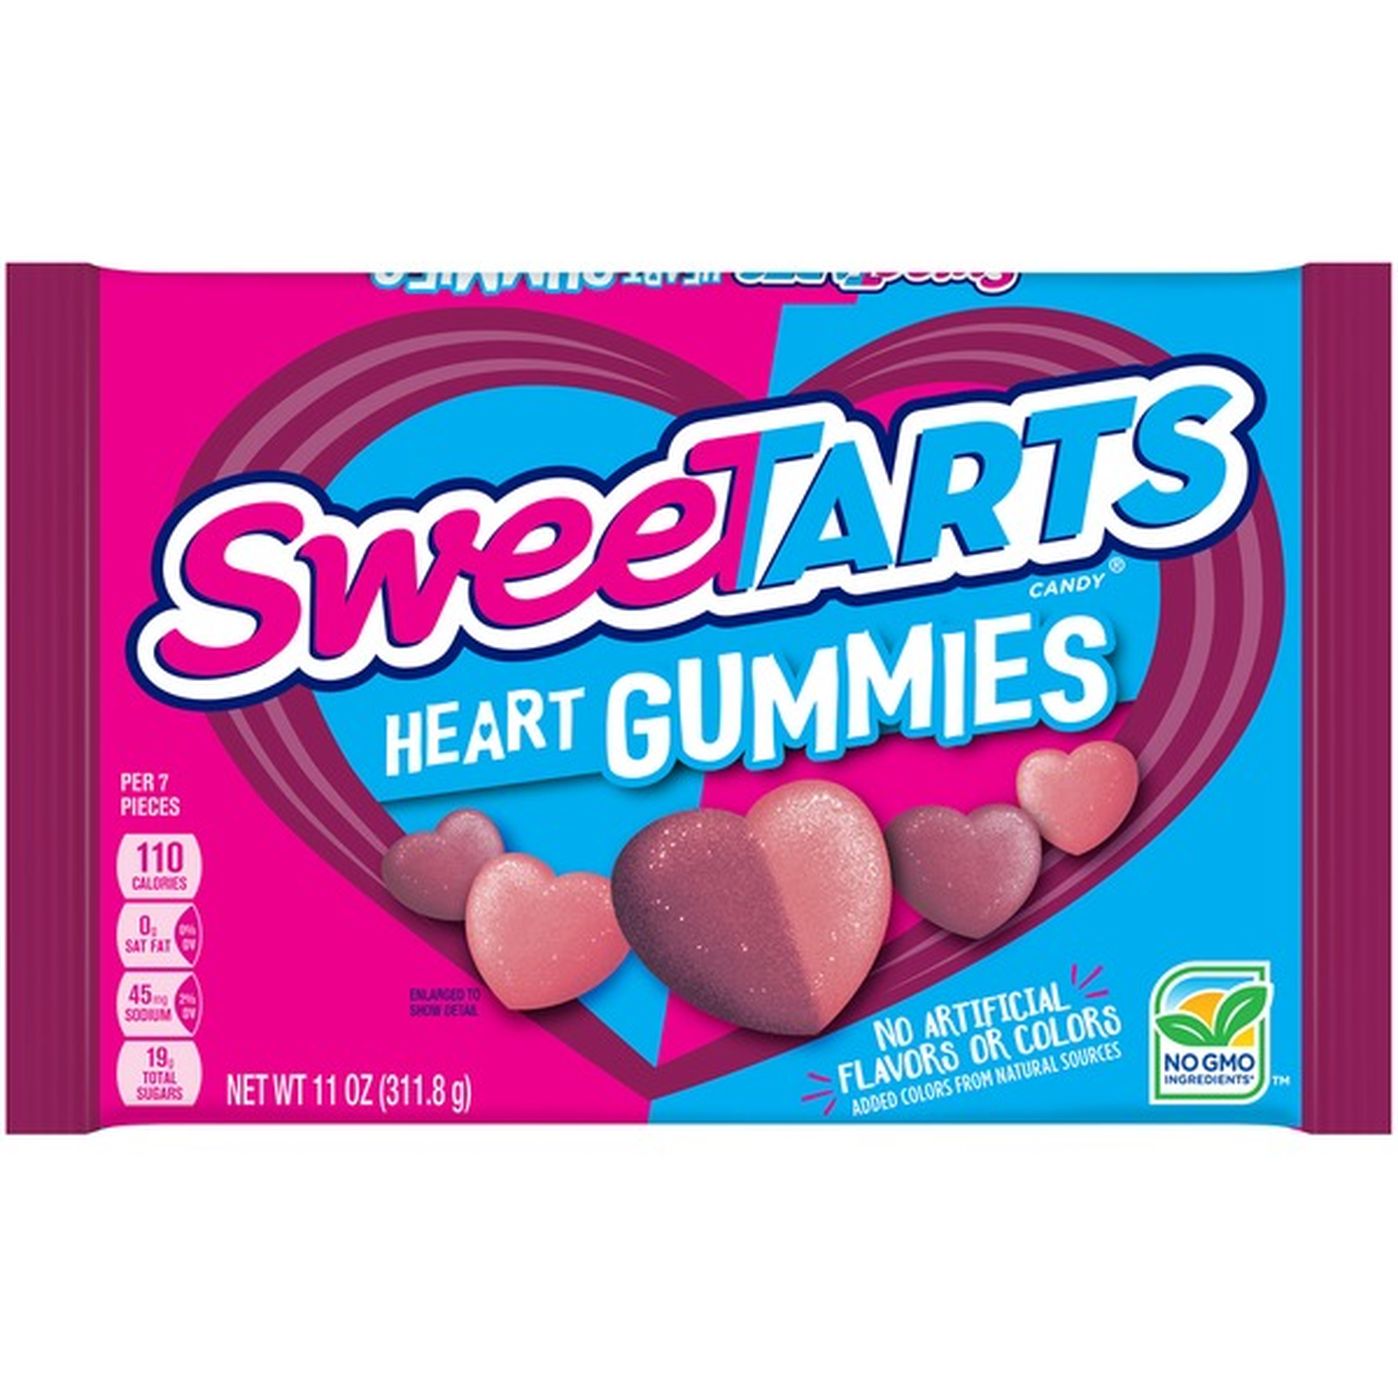 Sweetarts Heart Shaped Gummies Sweetarts Heart Gummies Candy 11 Oz